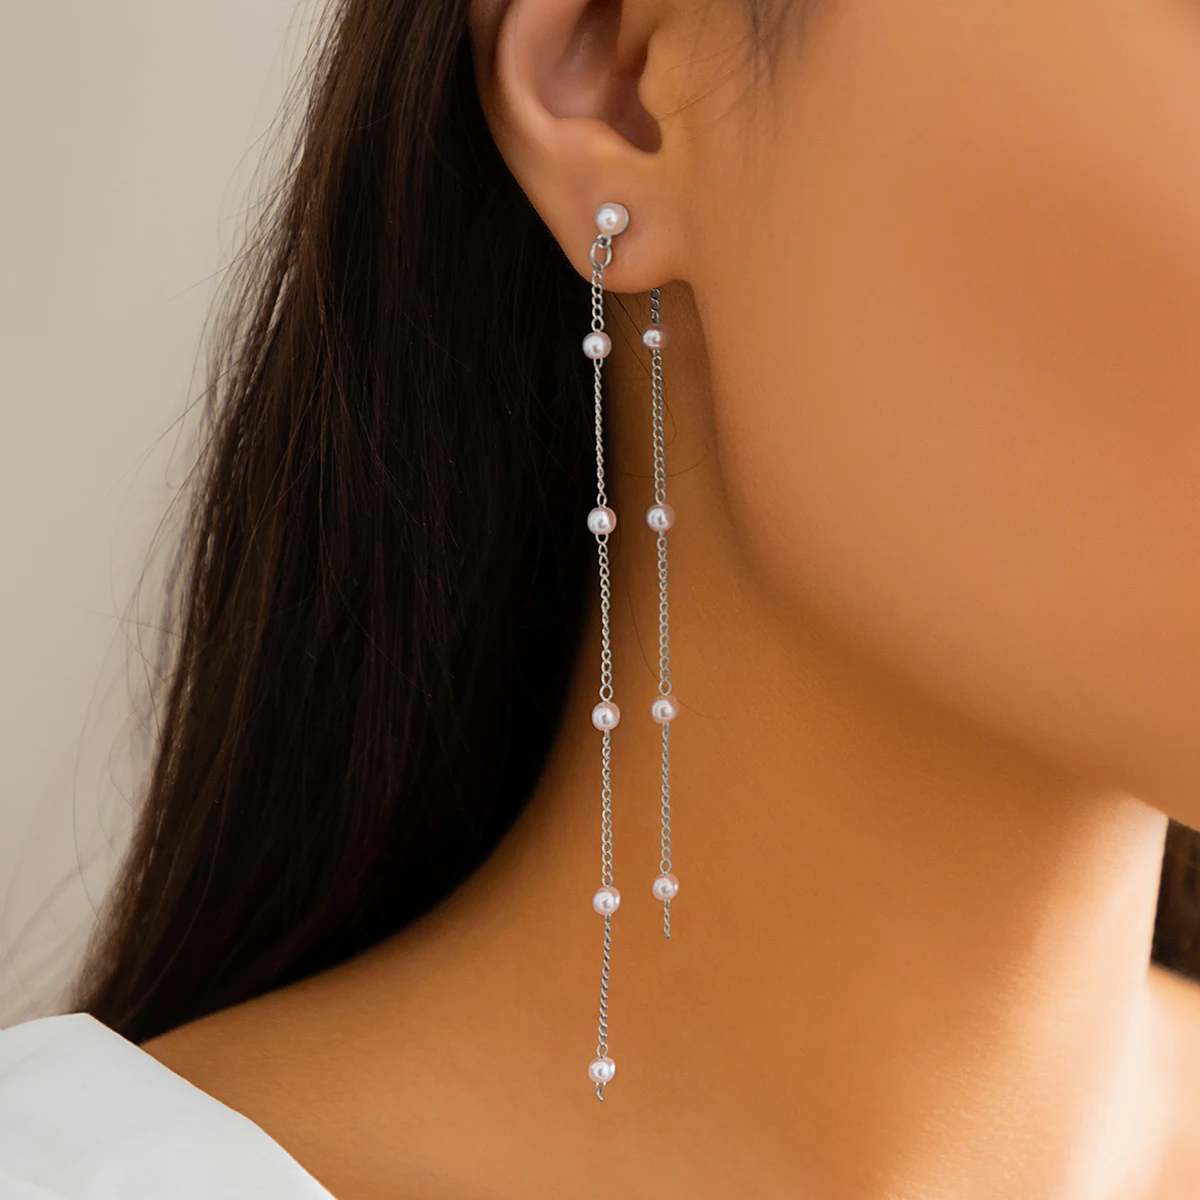 designer long jhumka earrings for women stylish earrings for girls